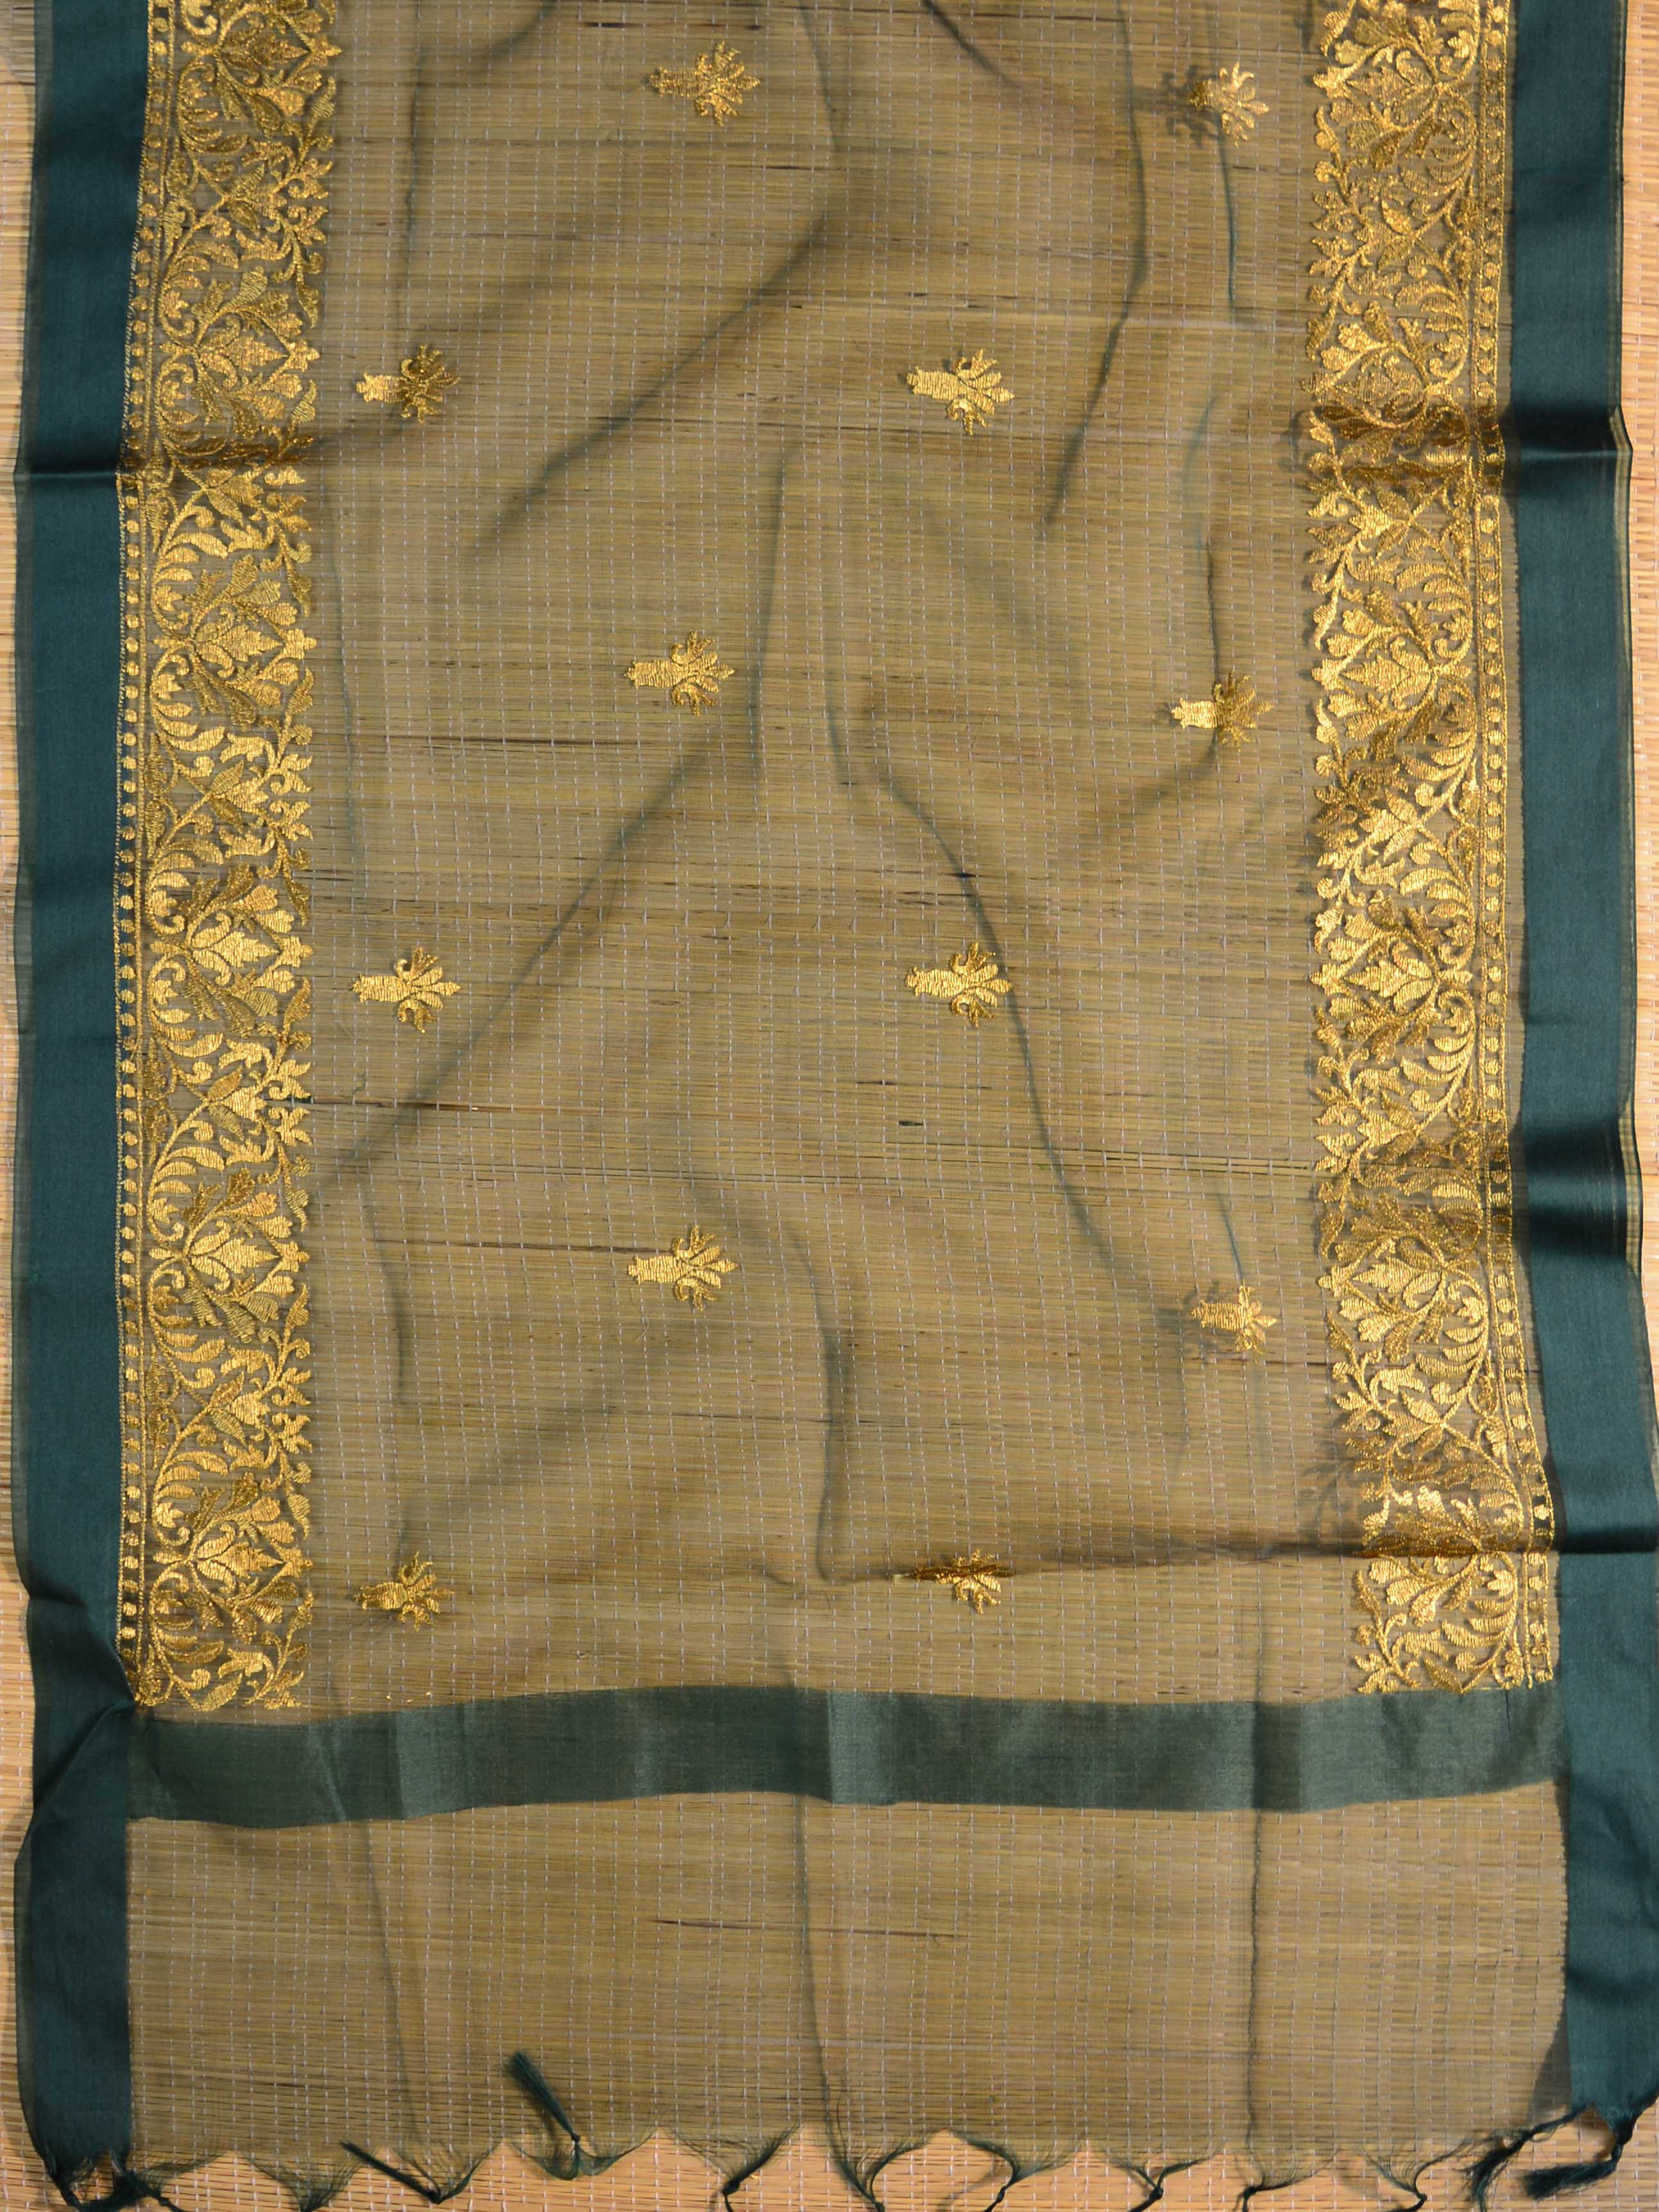 Banarasee Brocade Salwar Kameez Fabric With Organza Dupatta-Grey & Green